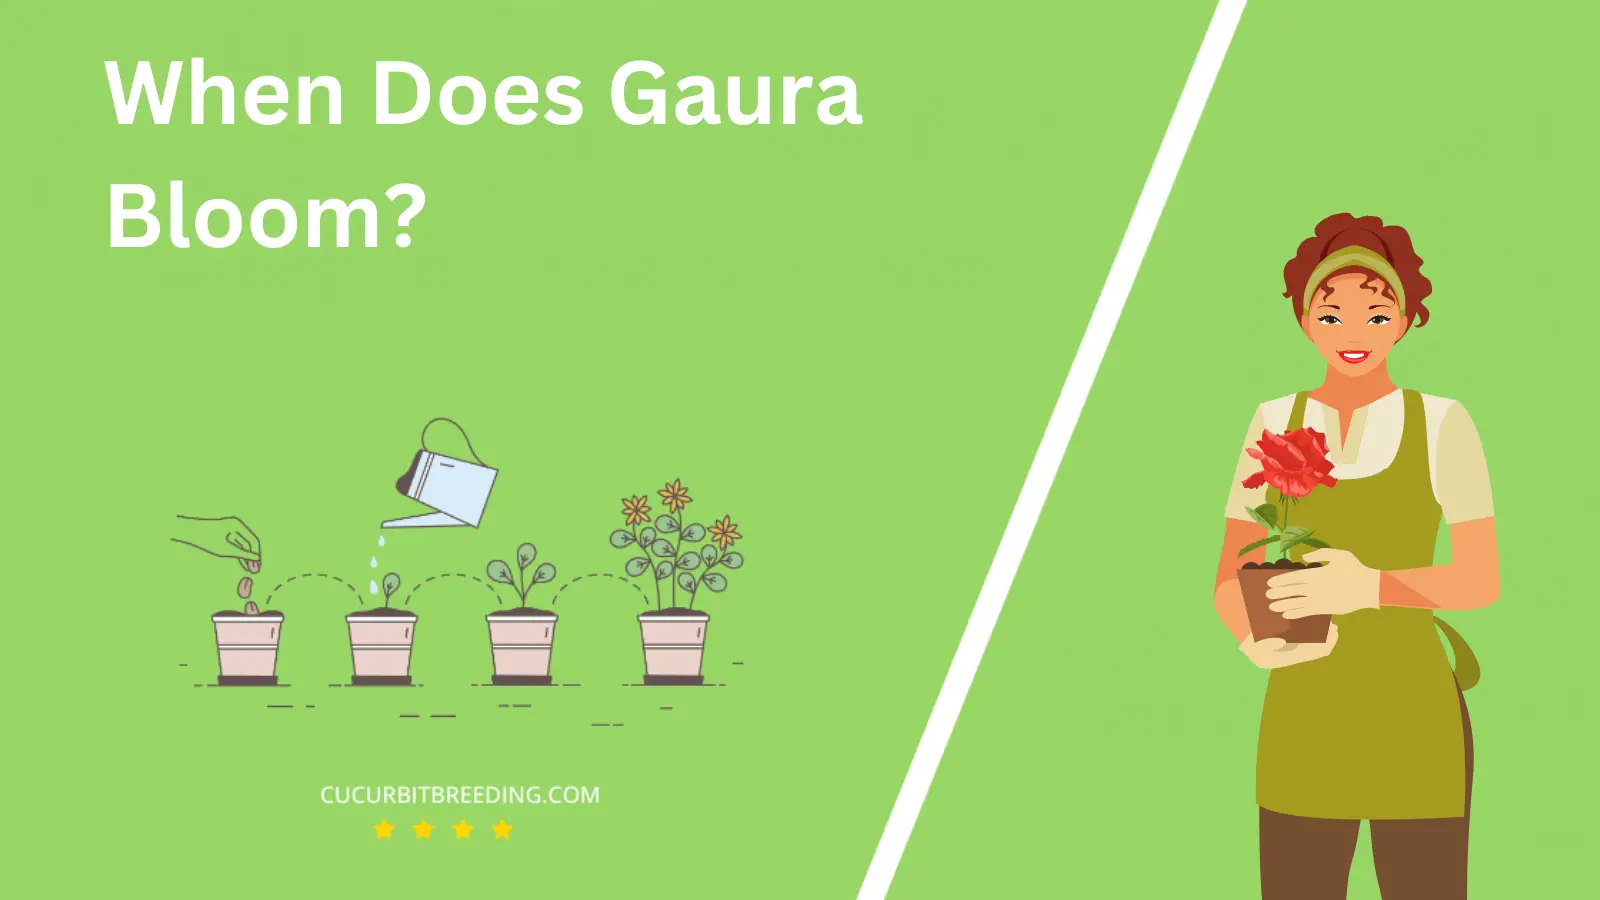 When Does Gaura Bloom?